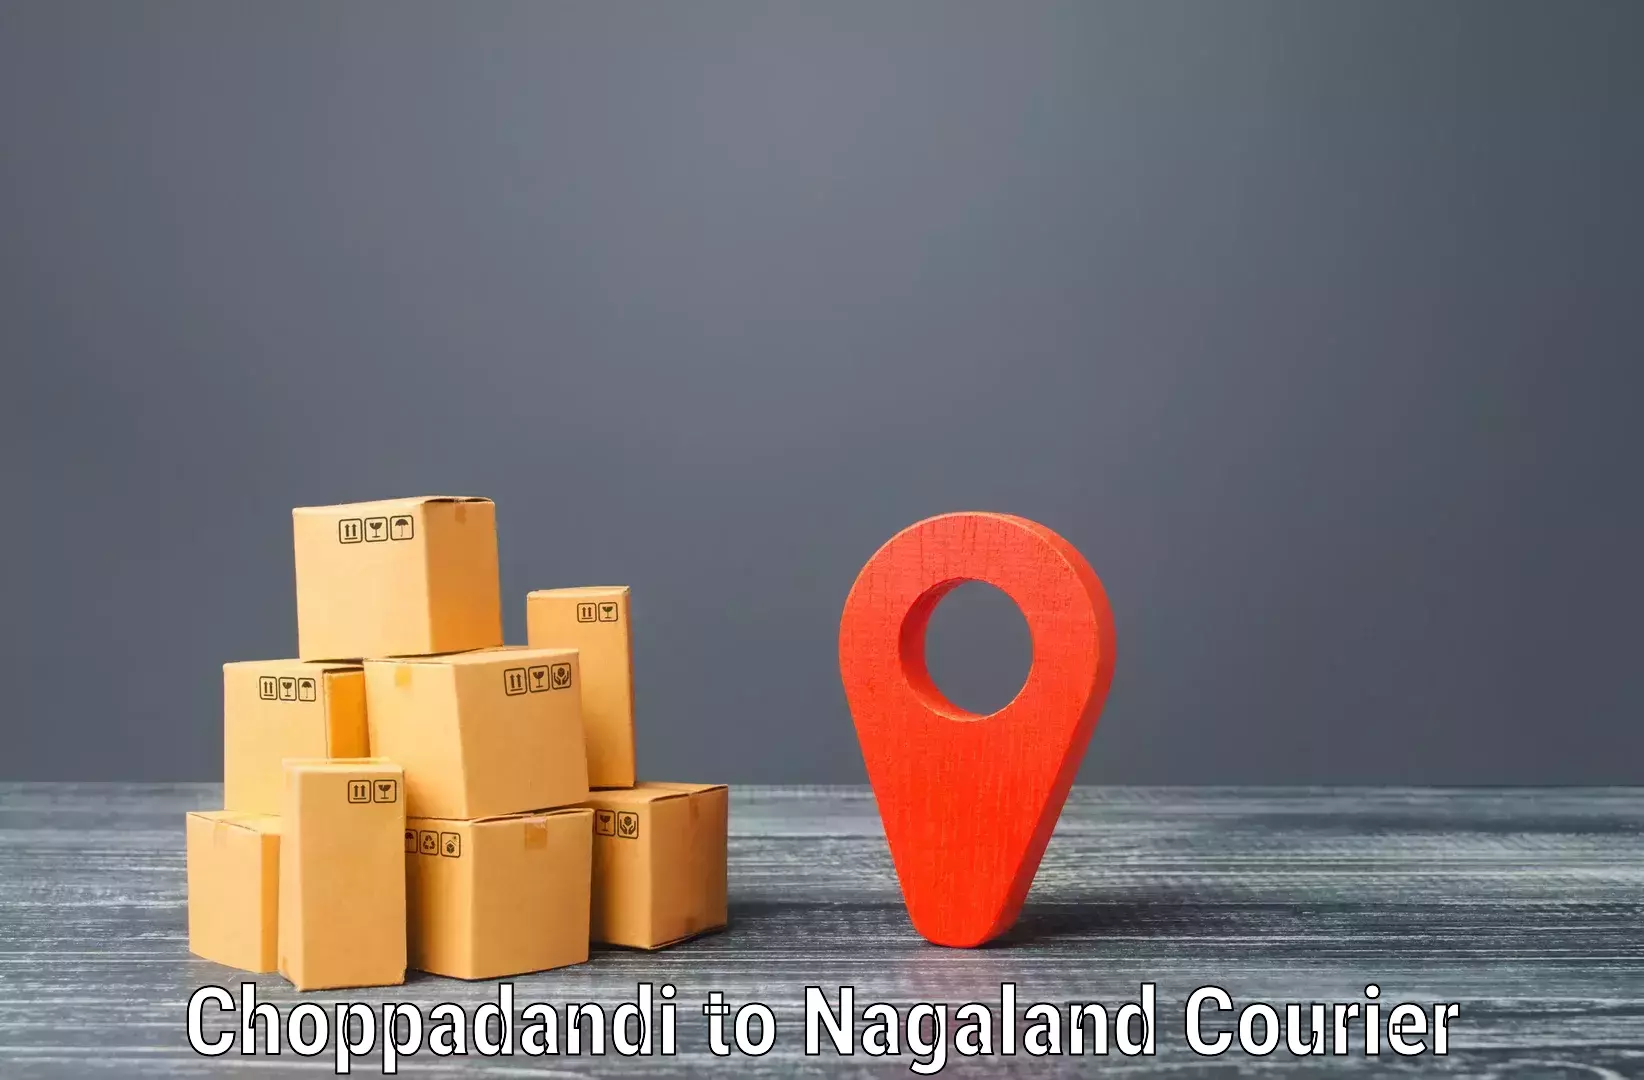 On-demand shipping options Choppadandi to Longleng